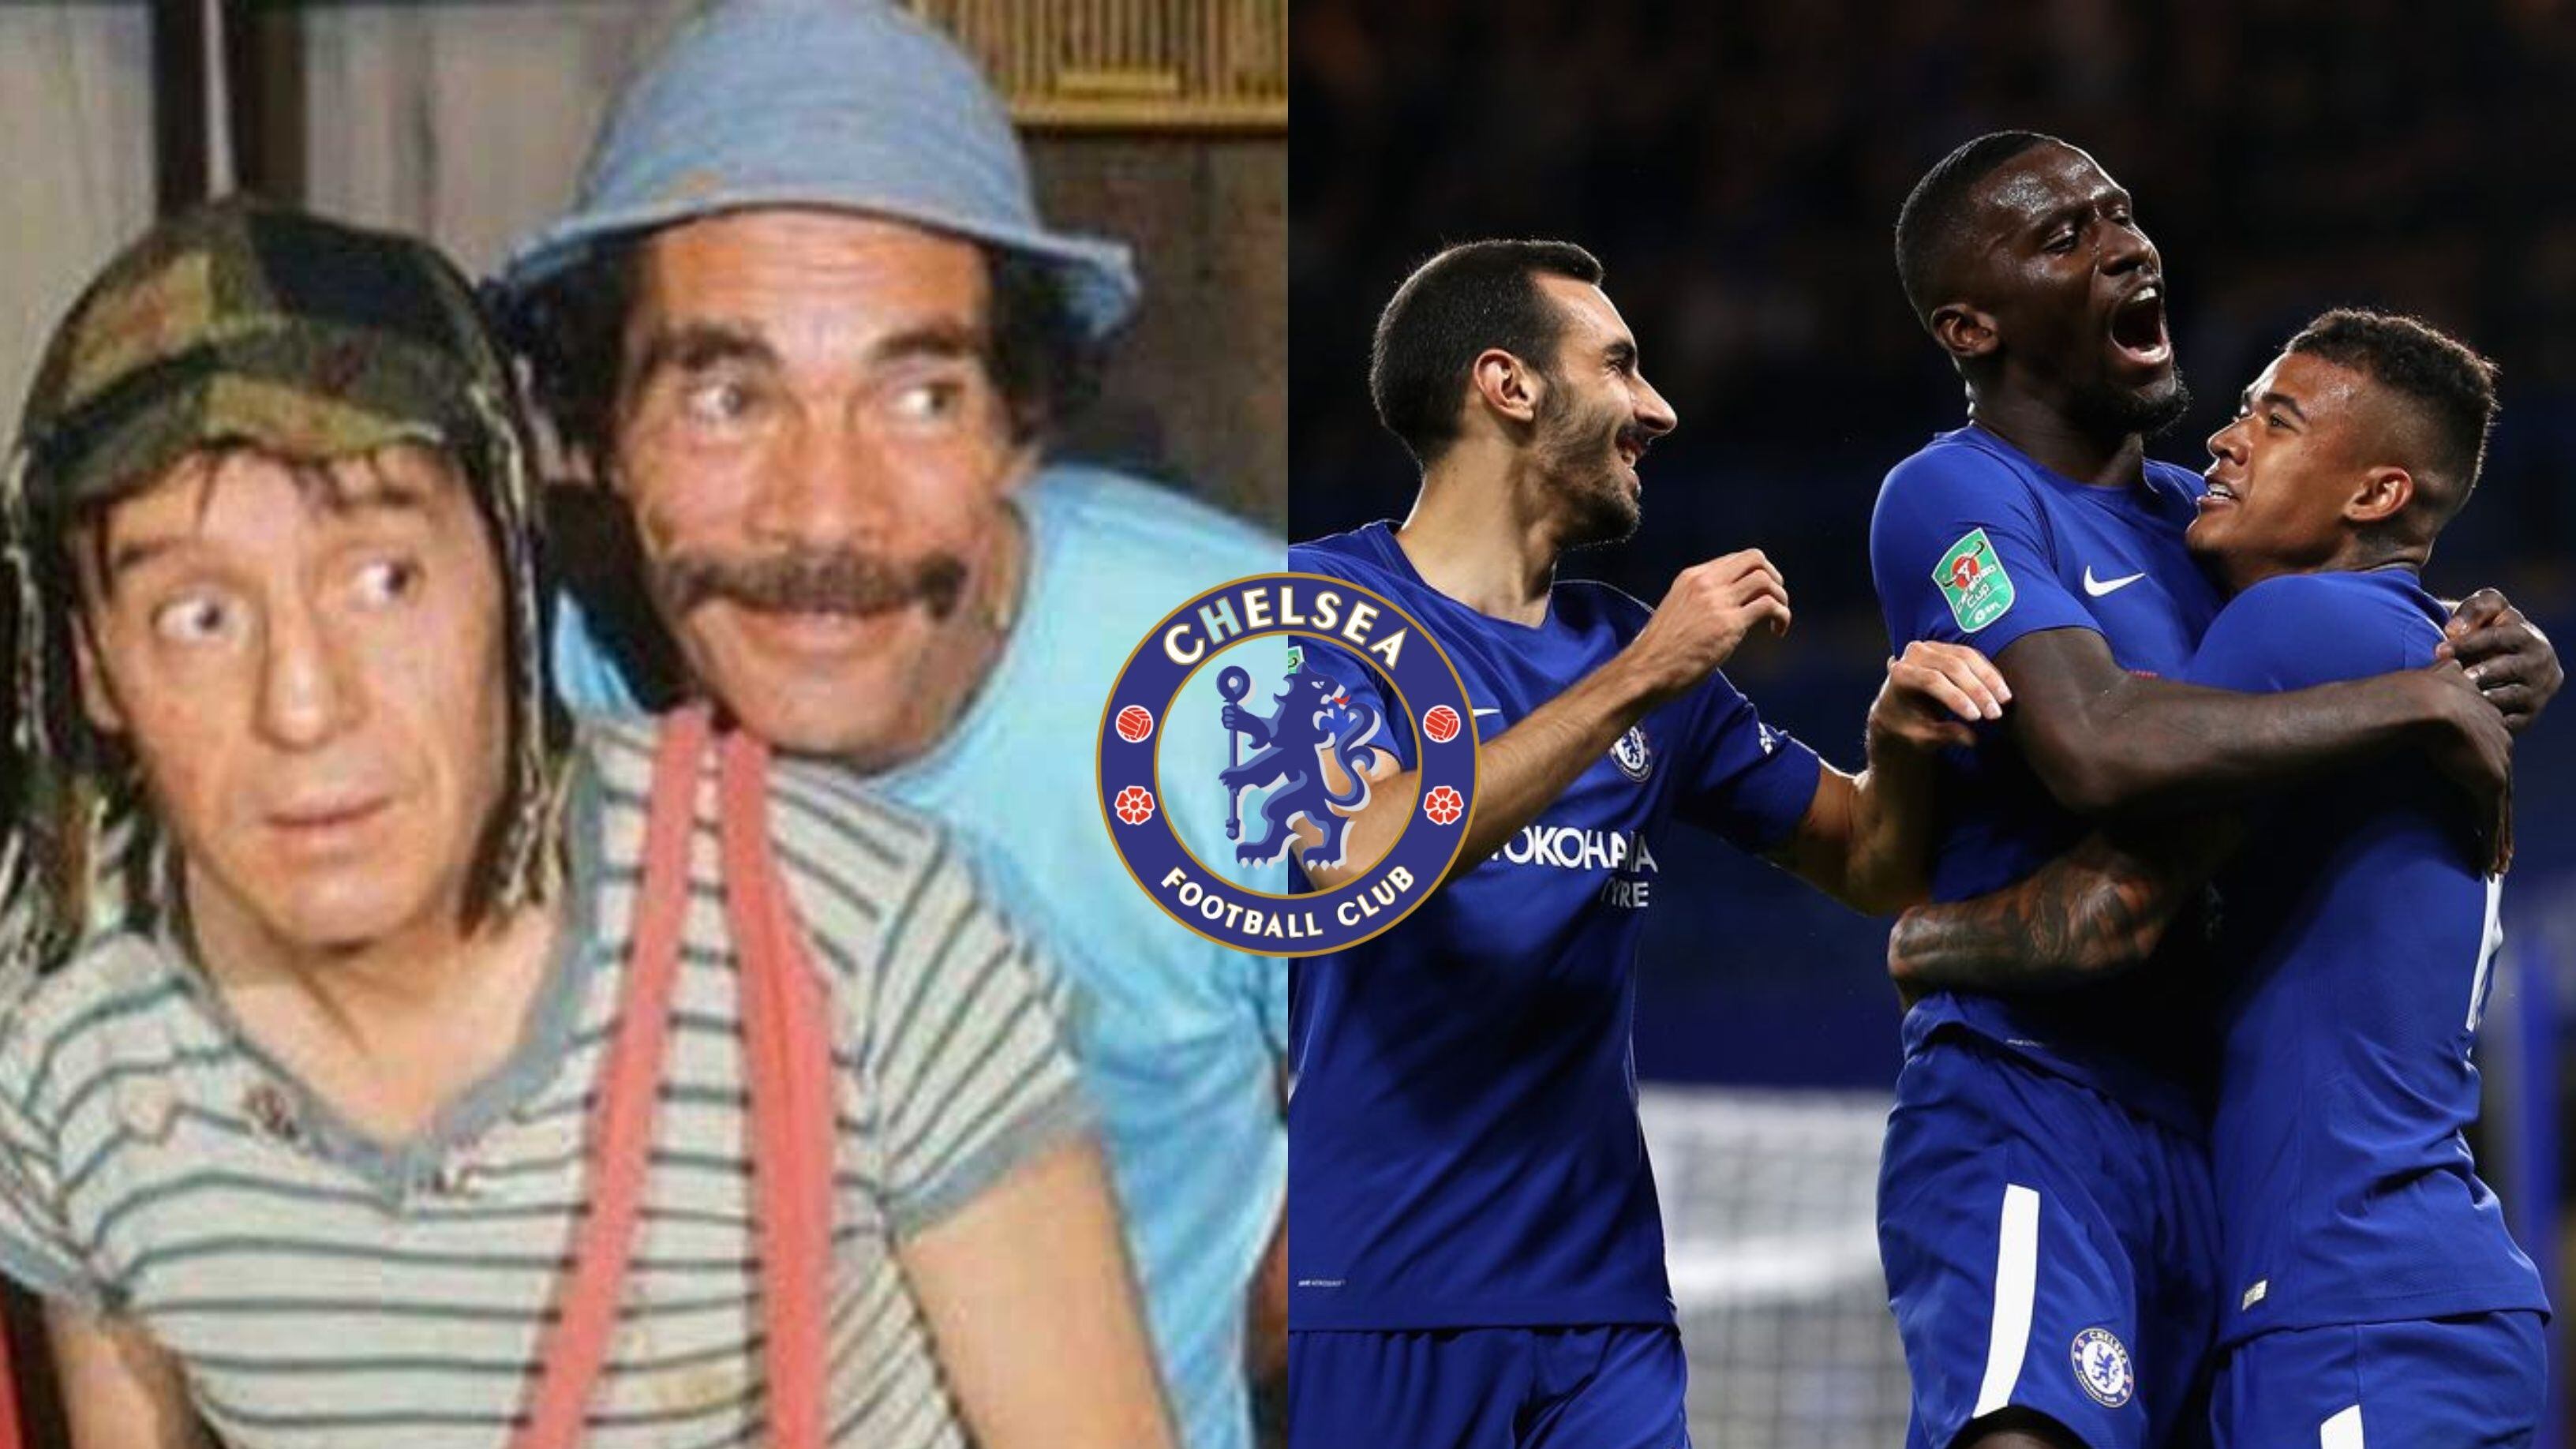 Sorprendió a todo el mundo, el jugador del Chelsea que mostró un tatuaje de Don Ramón